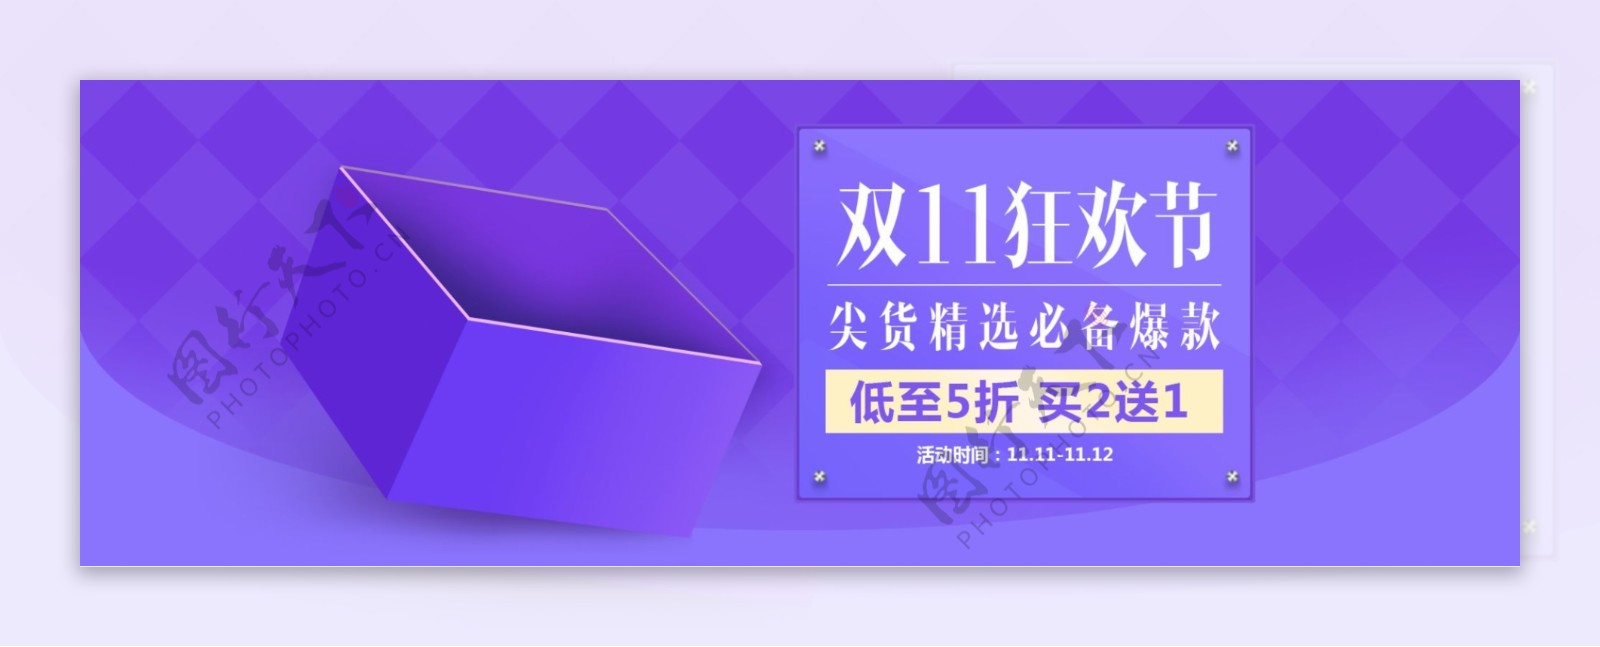 紫色促销双11狂欢节会场电商淘宝海报模板双十一